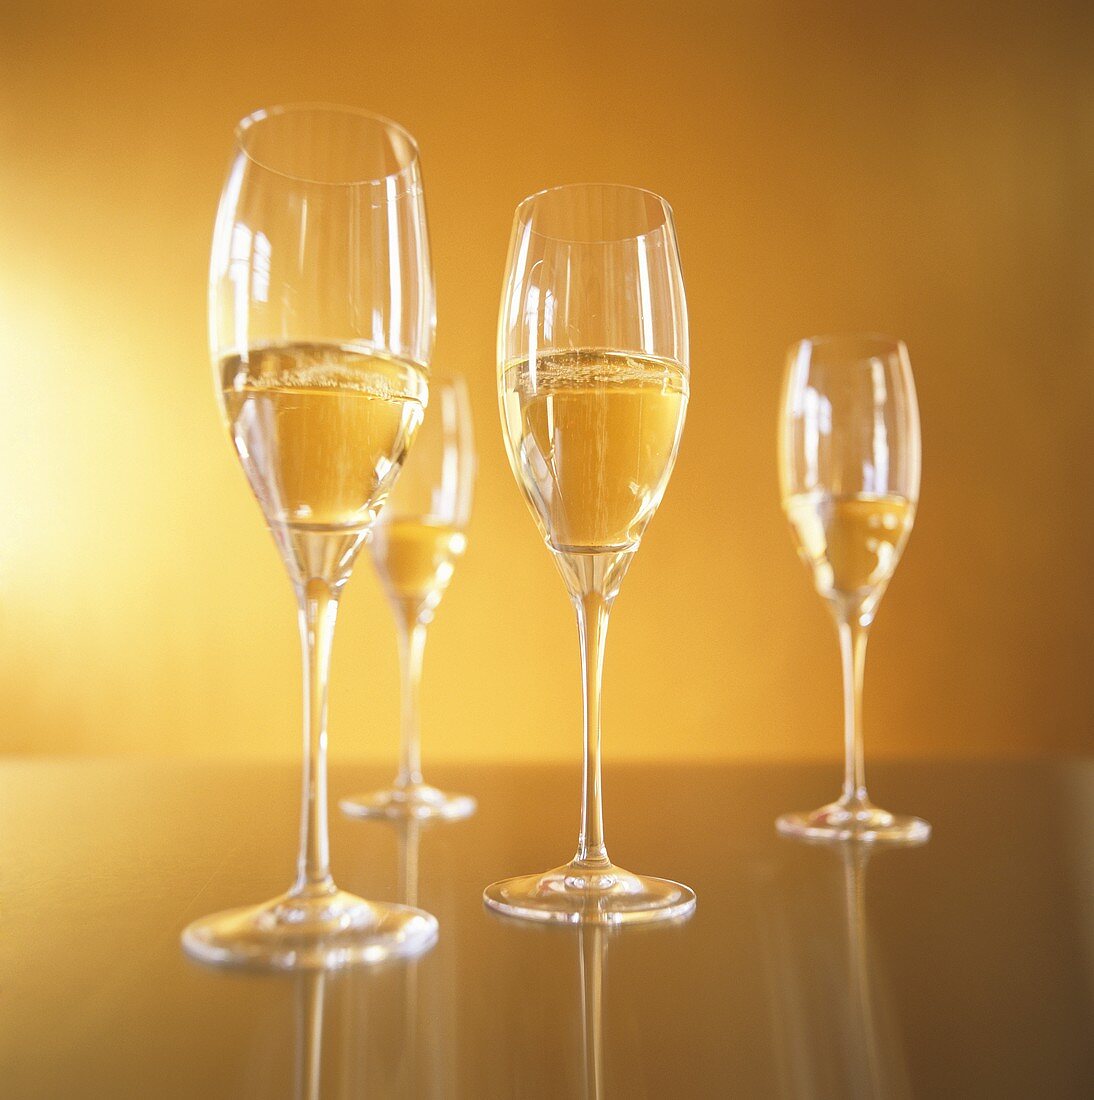 Vier Champagnergläser vor goldenem Hintergrund